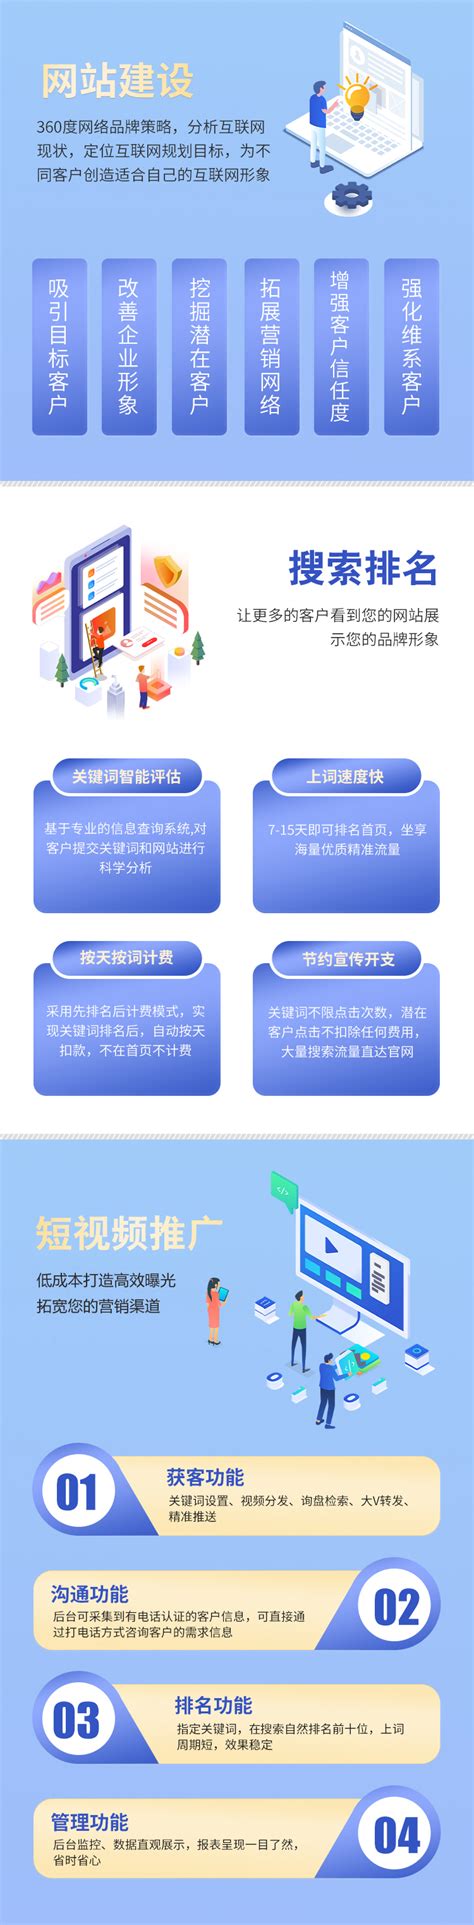 重庆网站建设制作开发公司